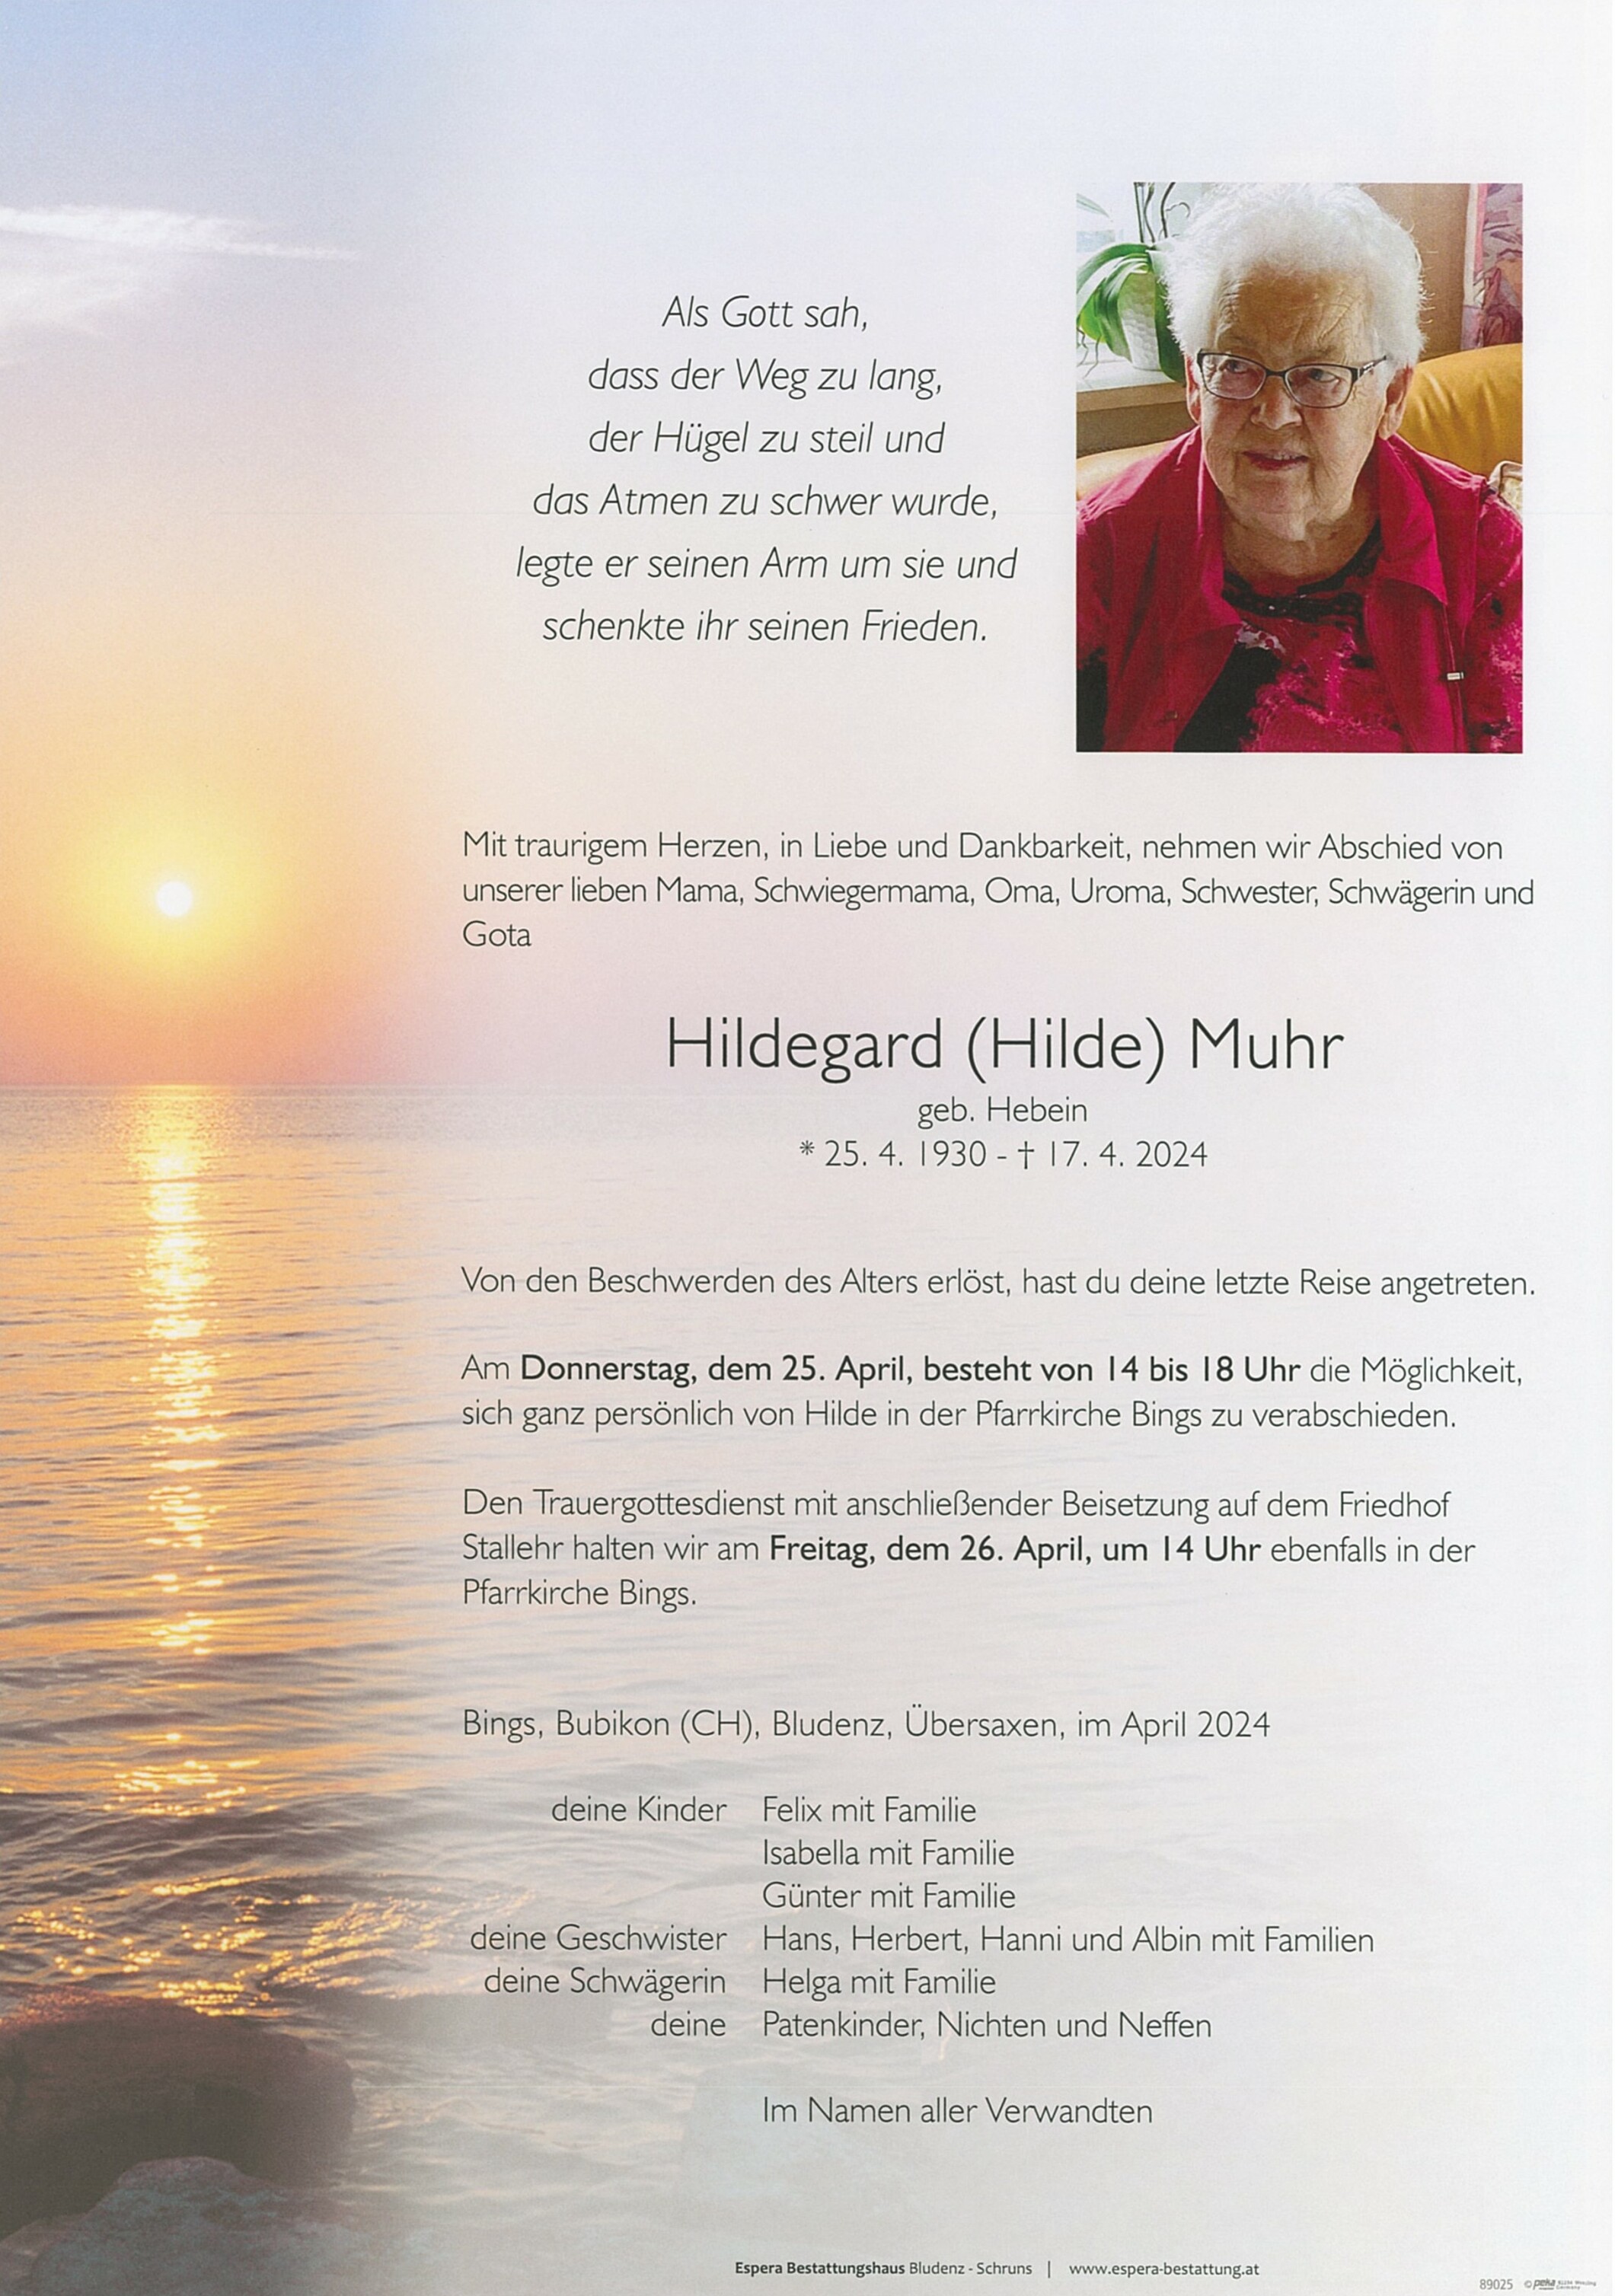 Hildegard (Hilde) Muhr